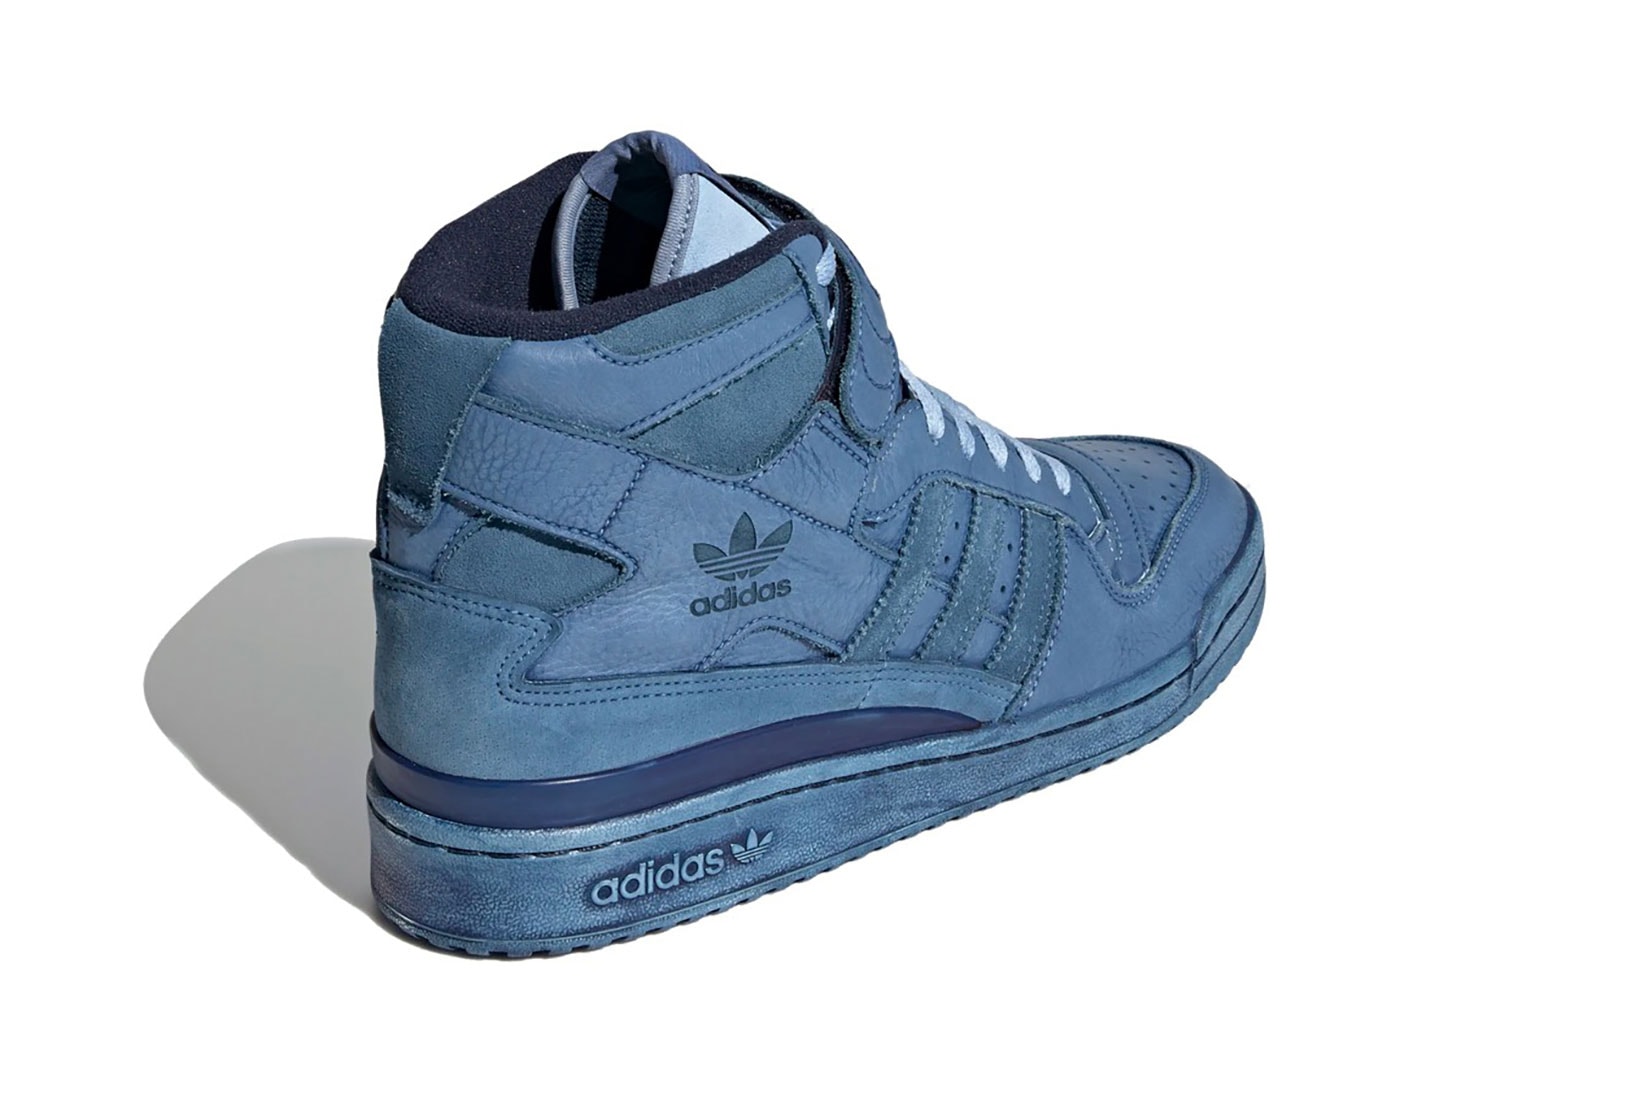 adidas forum 84 high sneakers indigo blue colorway shoes footwear sneakerhead